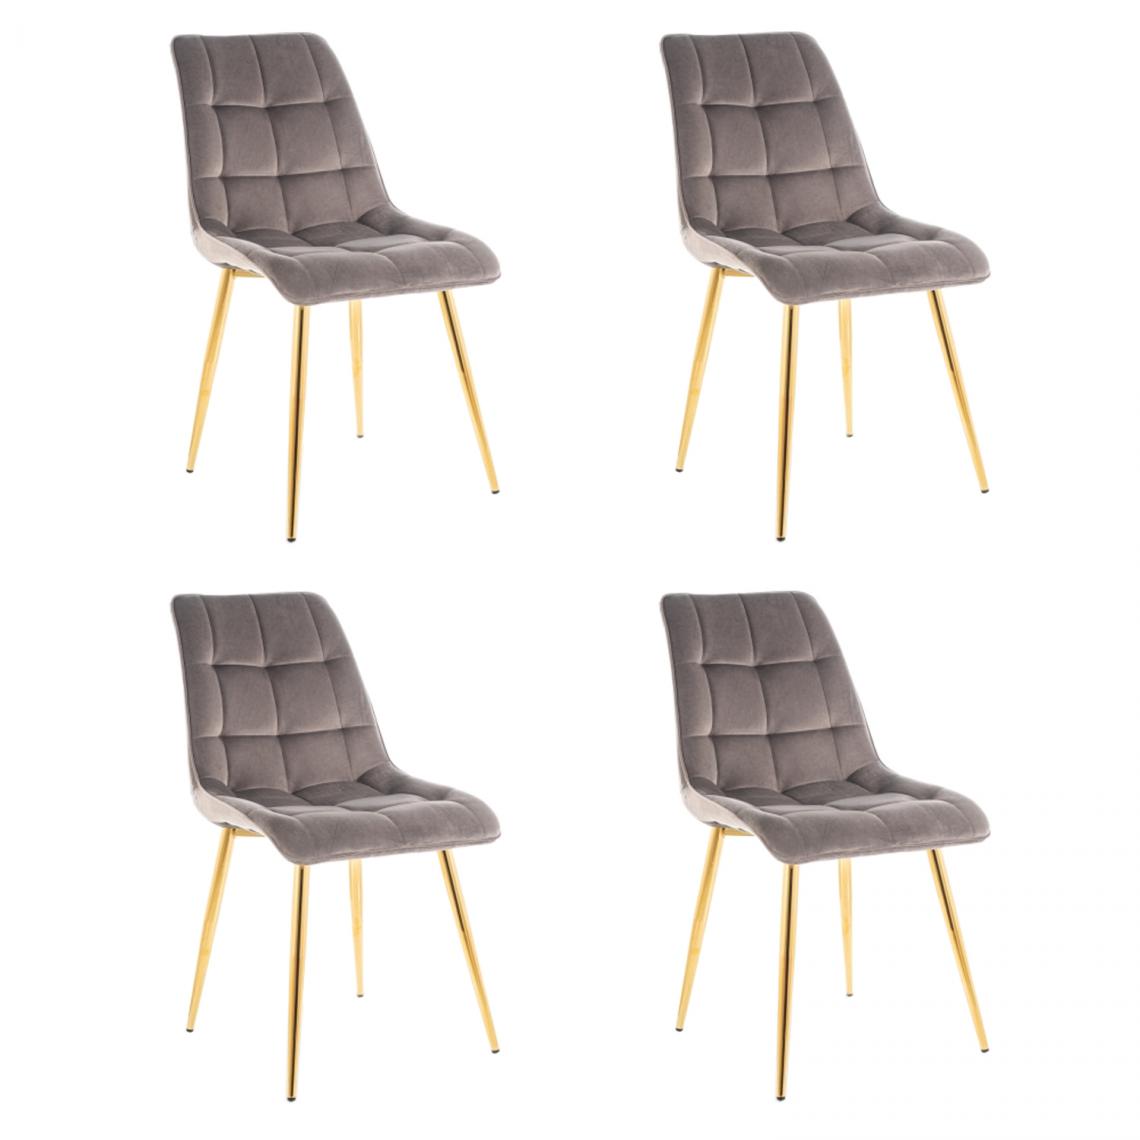 Hucoco - MASI - Lot de 4 chaises matelassées pour salon - 89x51x44 cm - Tissu velouté - Dossier matelassé - Gris - Chaises